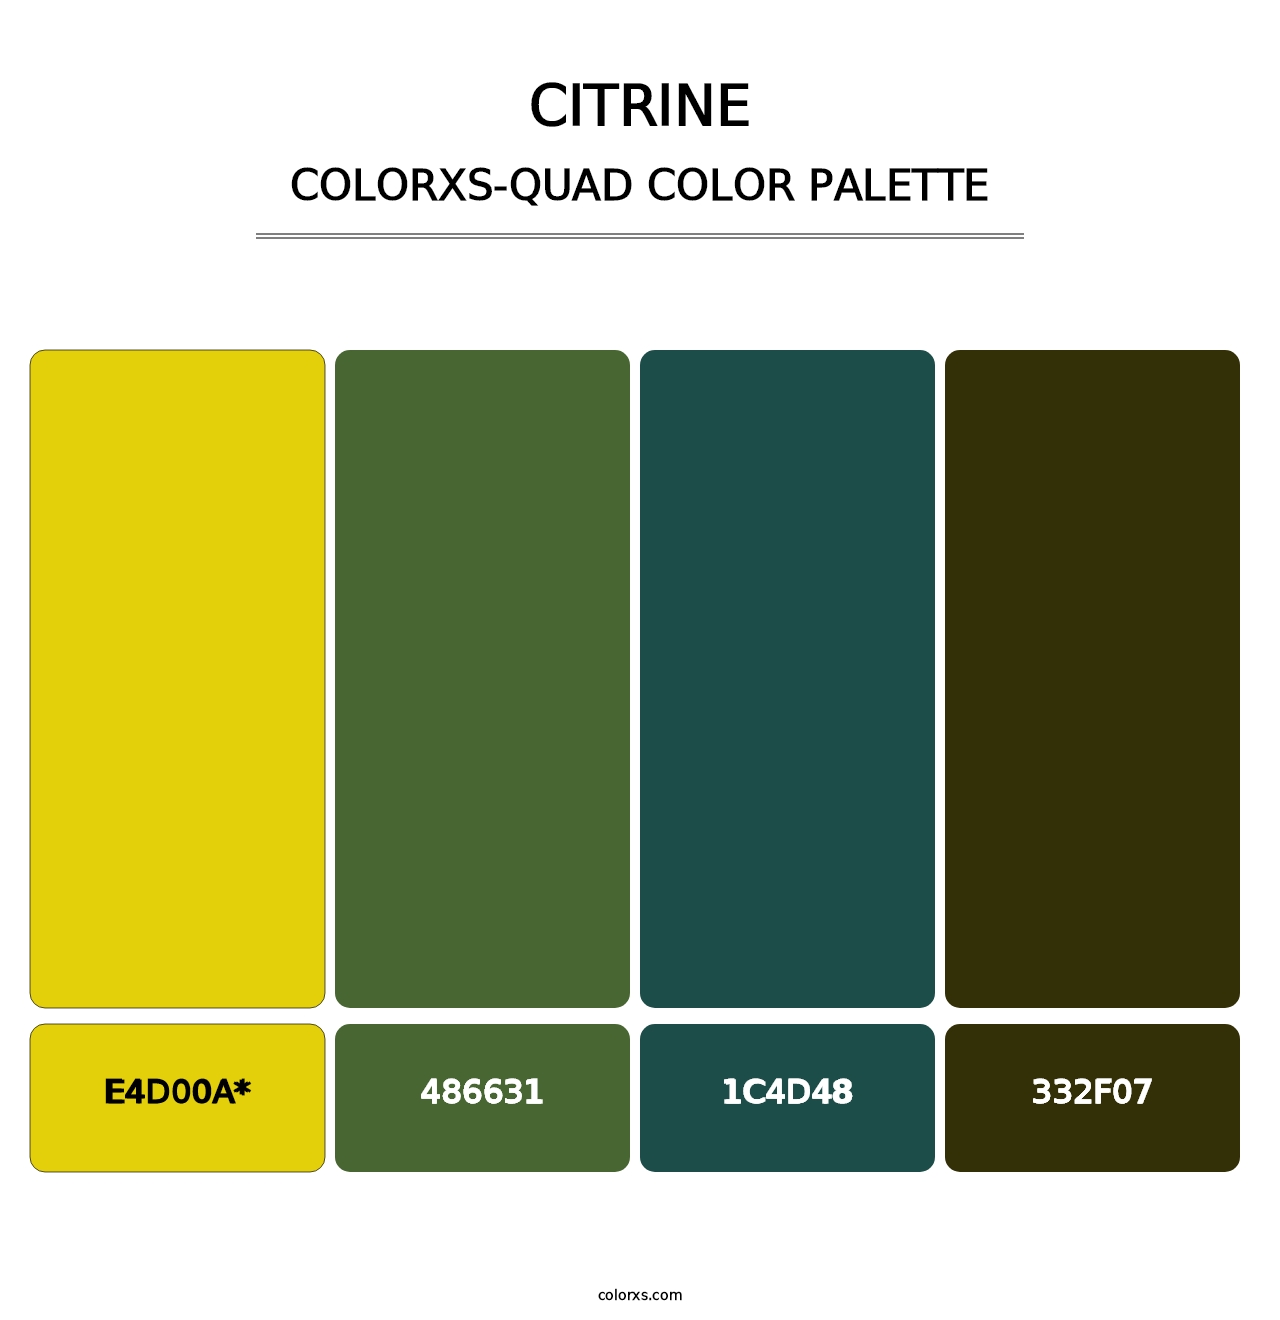 Citrine - Colorxs Quad Palette